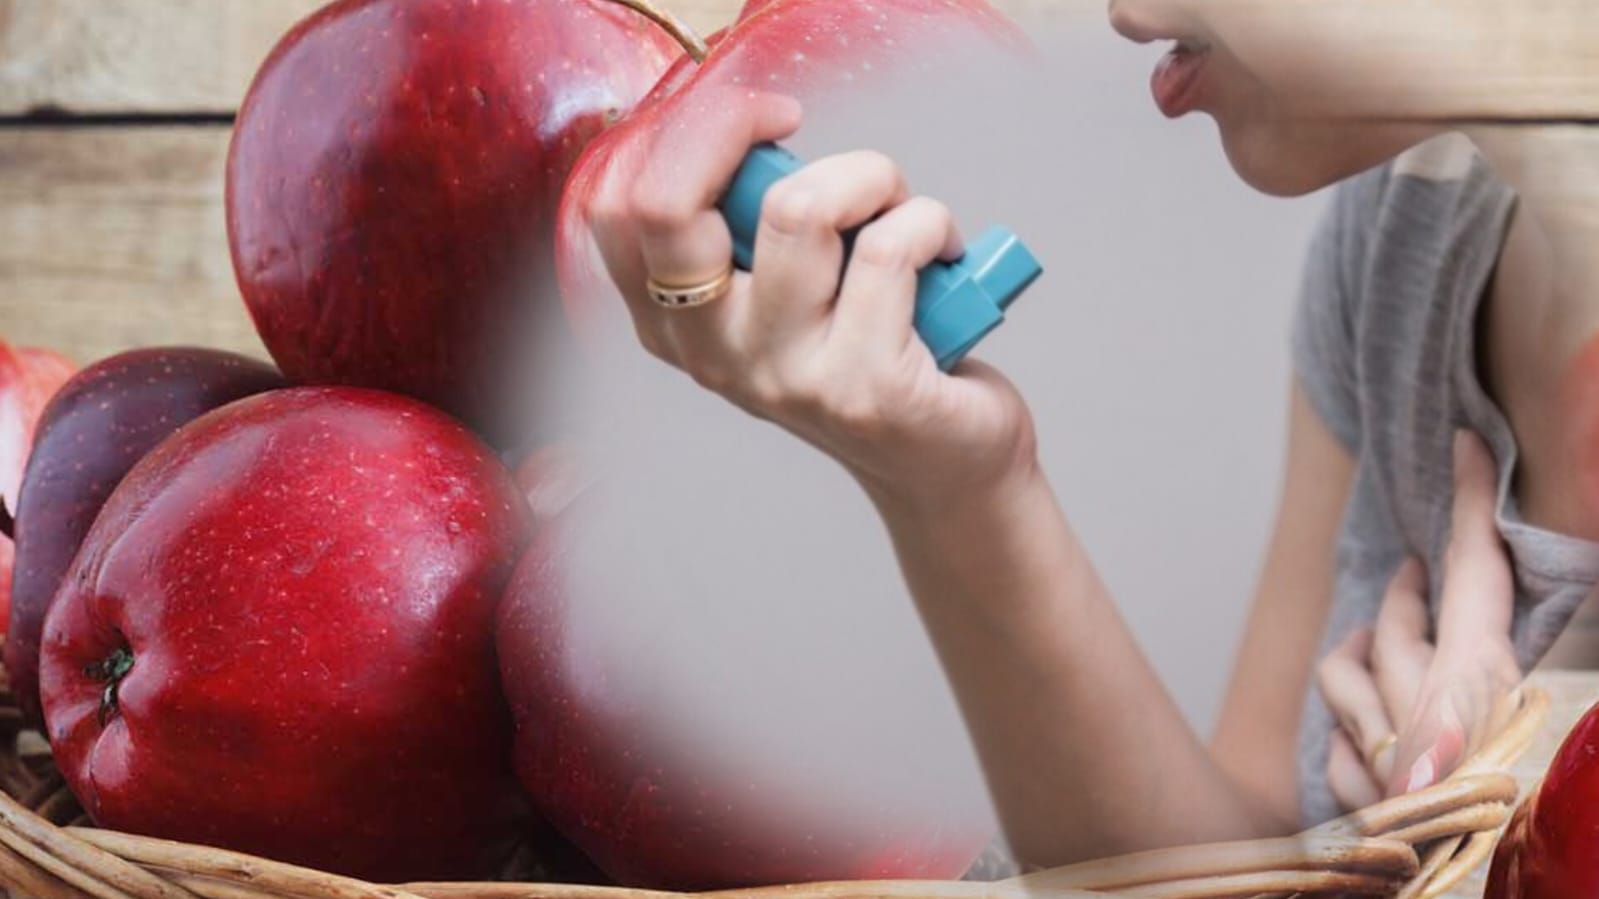 Rahasia Sehat: Mengatasi Asma dan Menjaga Paru-paru dengan Apel, Emang Bisa?